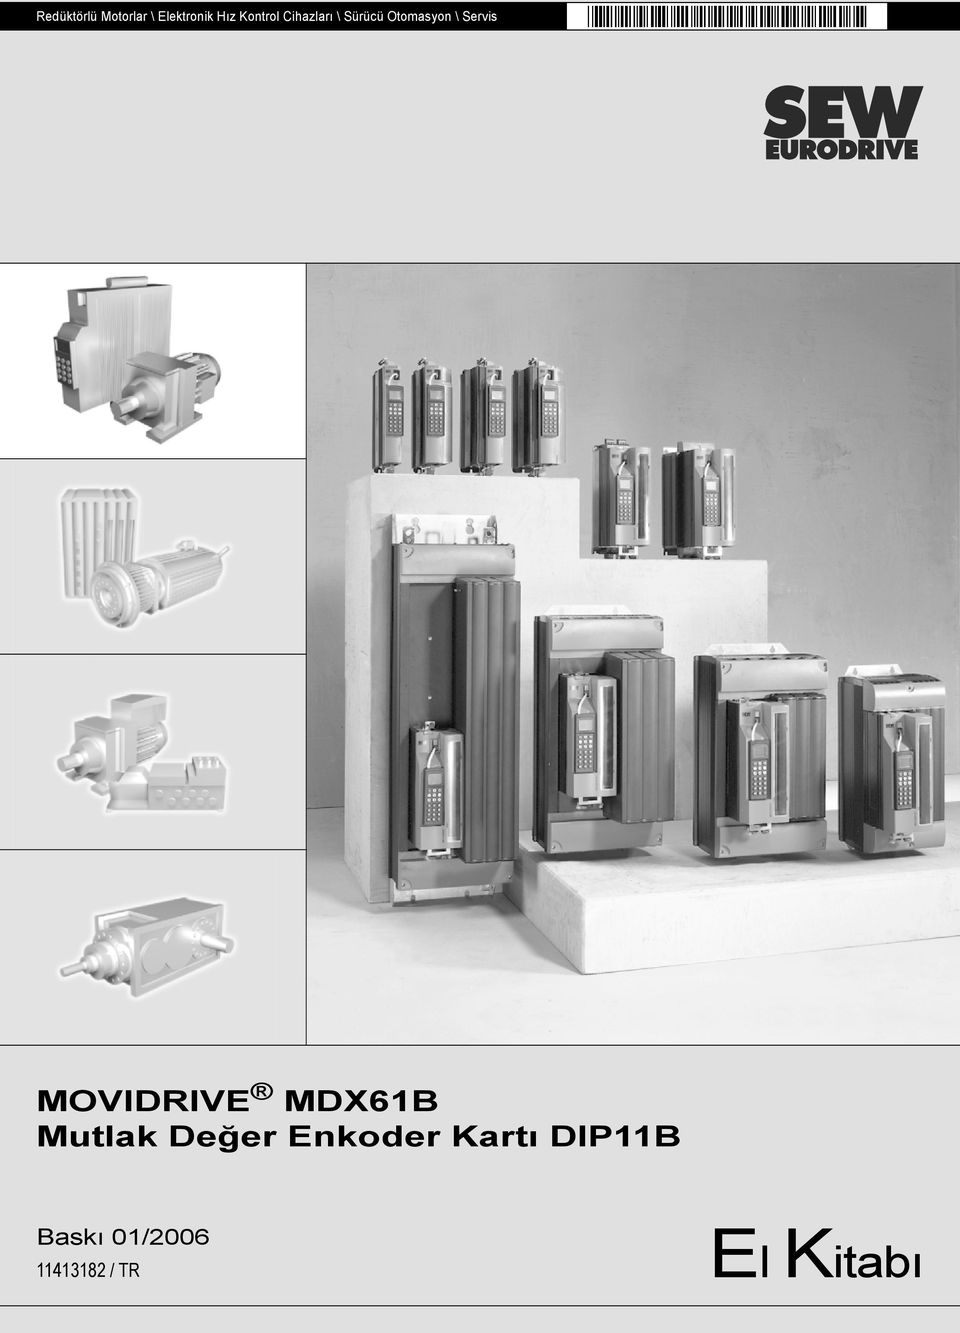 MOVIDRIVE MDX61B Mutlak Değer Enkoder